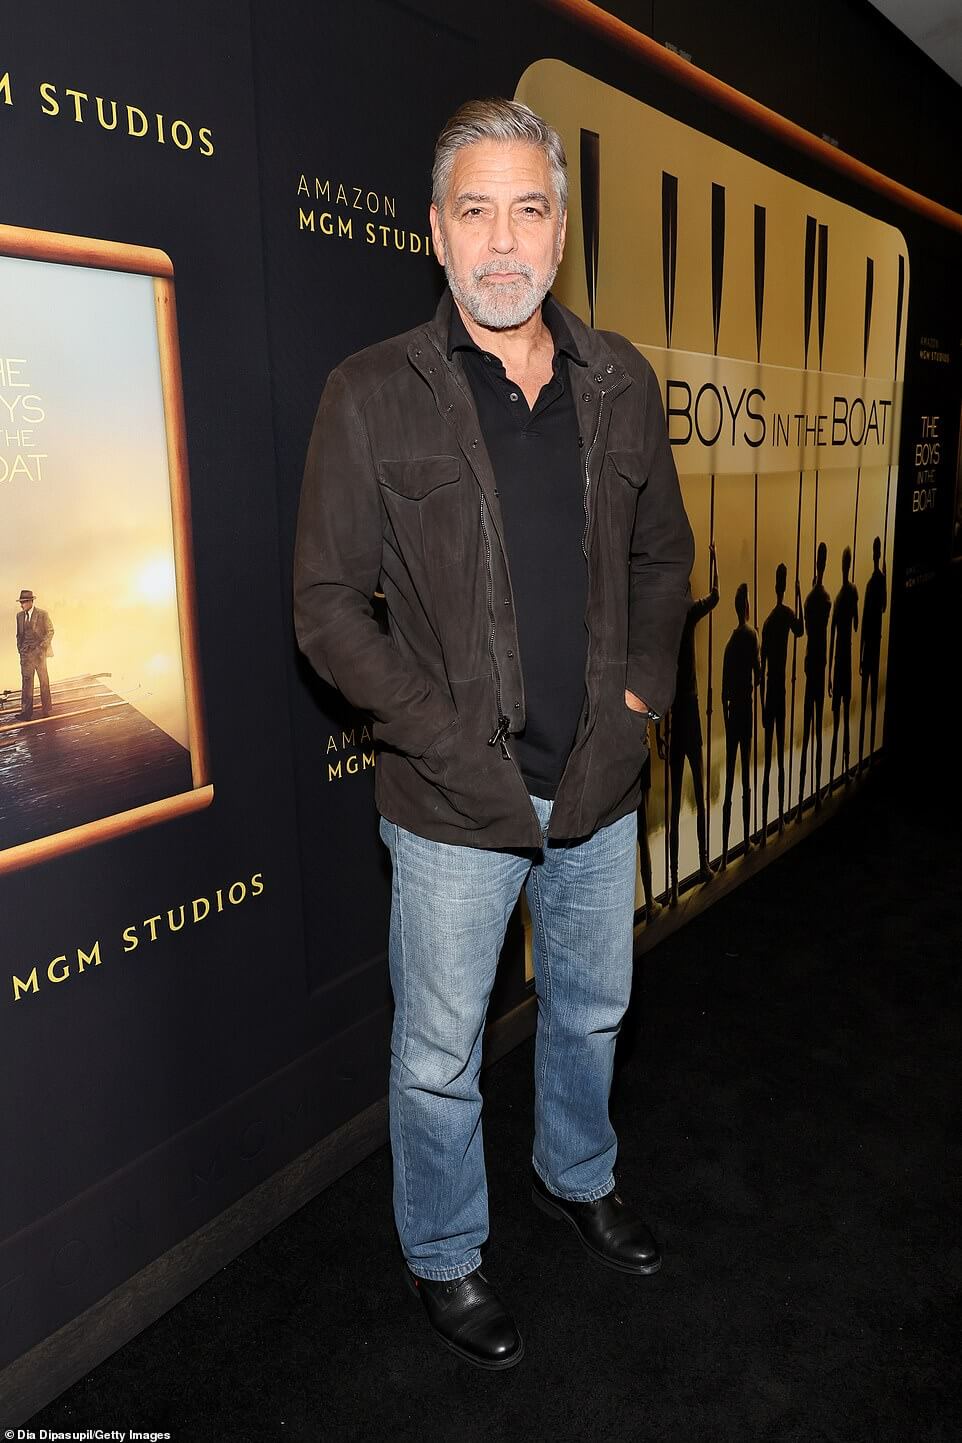 Джордж Клуни в синих джинсах на показе своего фильма «Мальчики в лодке» в Нью-Йорке… после того, как пошутил об ужасных кулинарных способностях жены Амаль